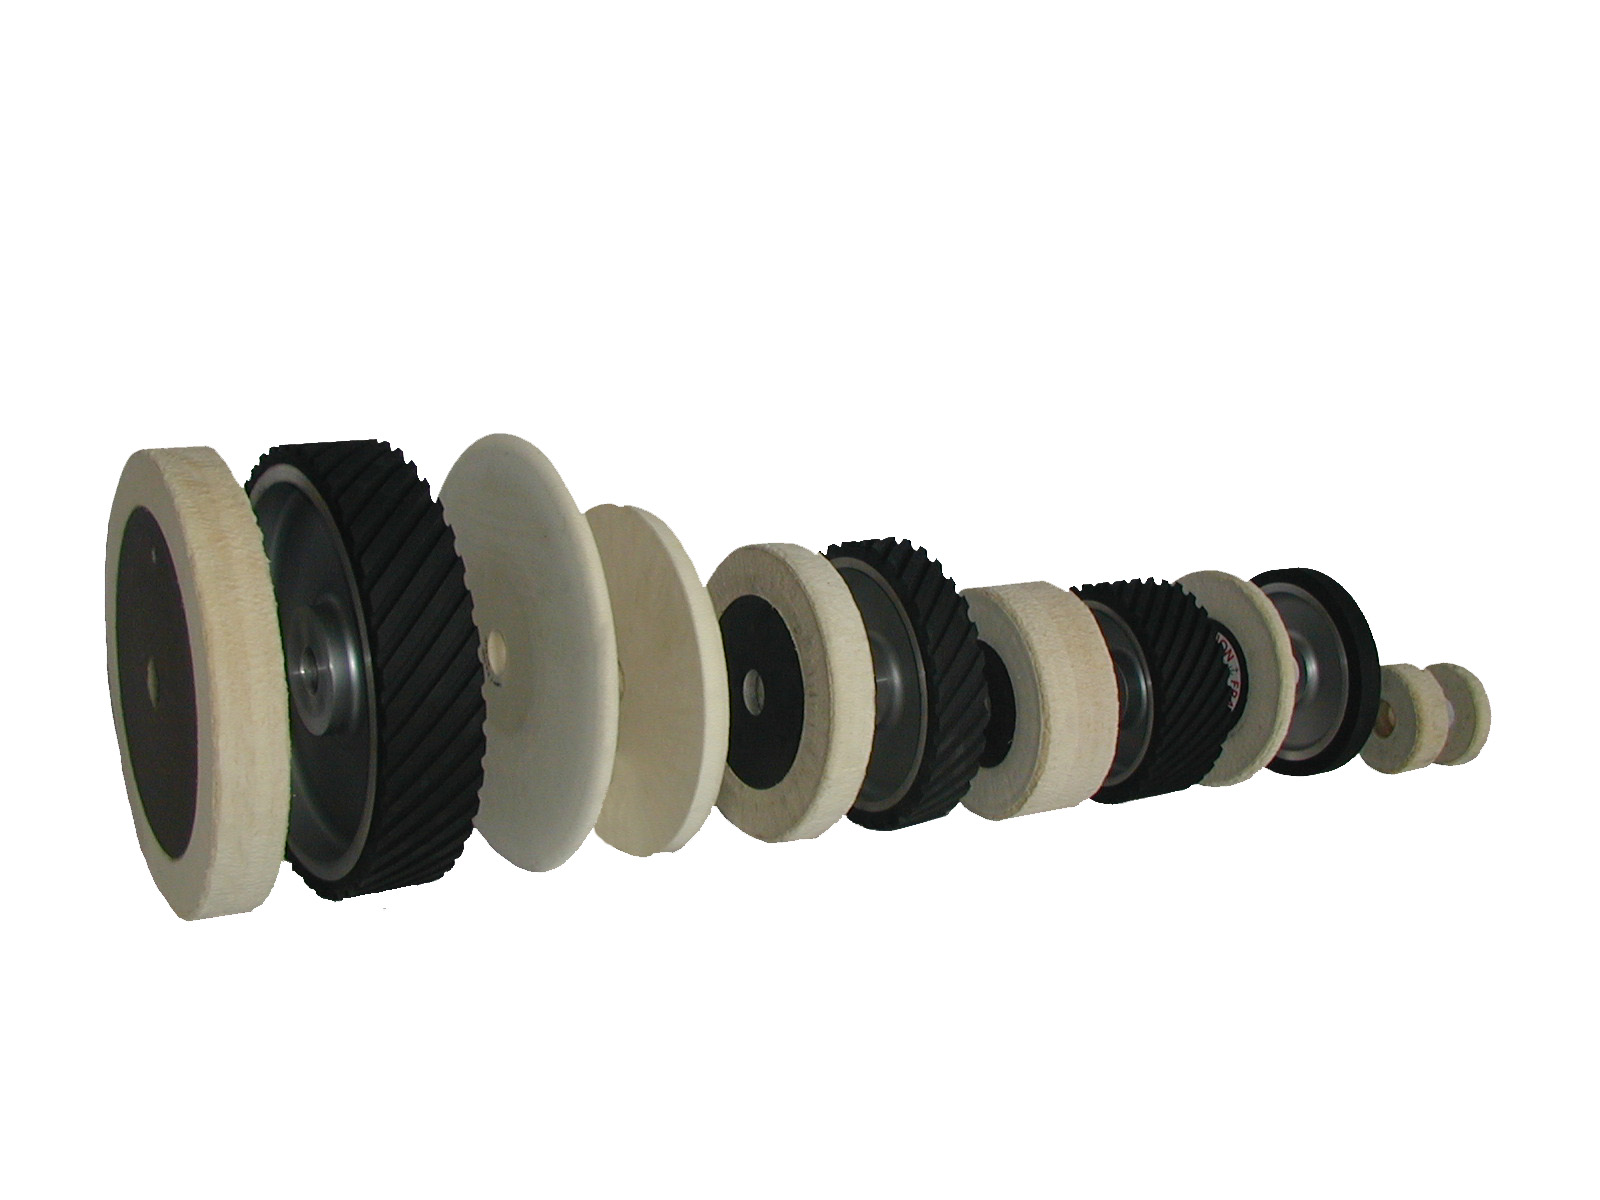 Serrated/Solid Abrasive Contact Rubber Wheel Grinding For Belt Grinder Sander